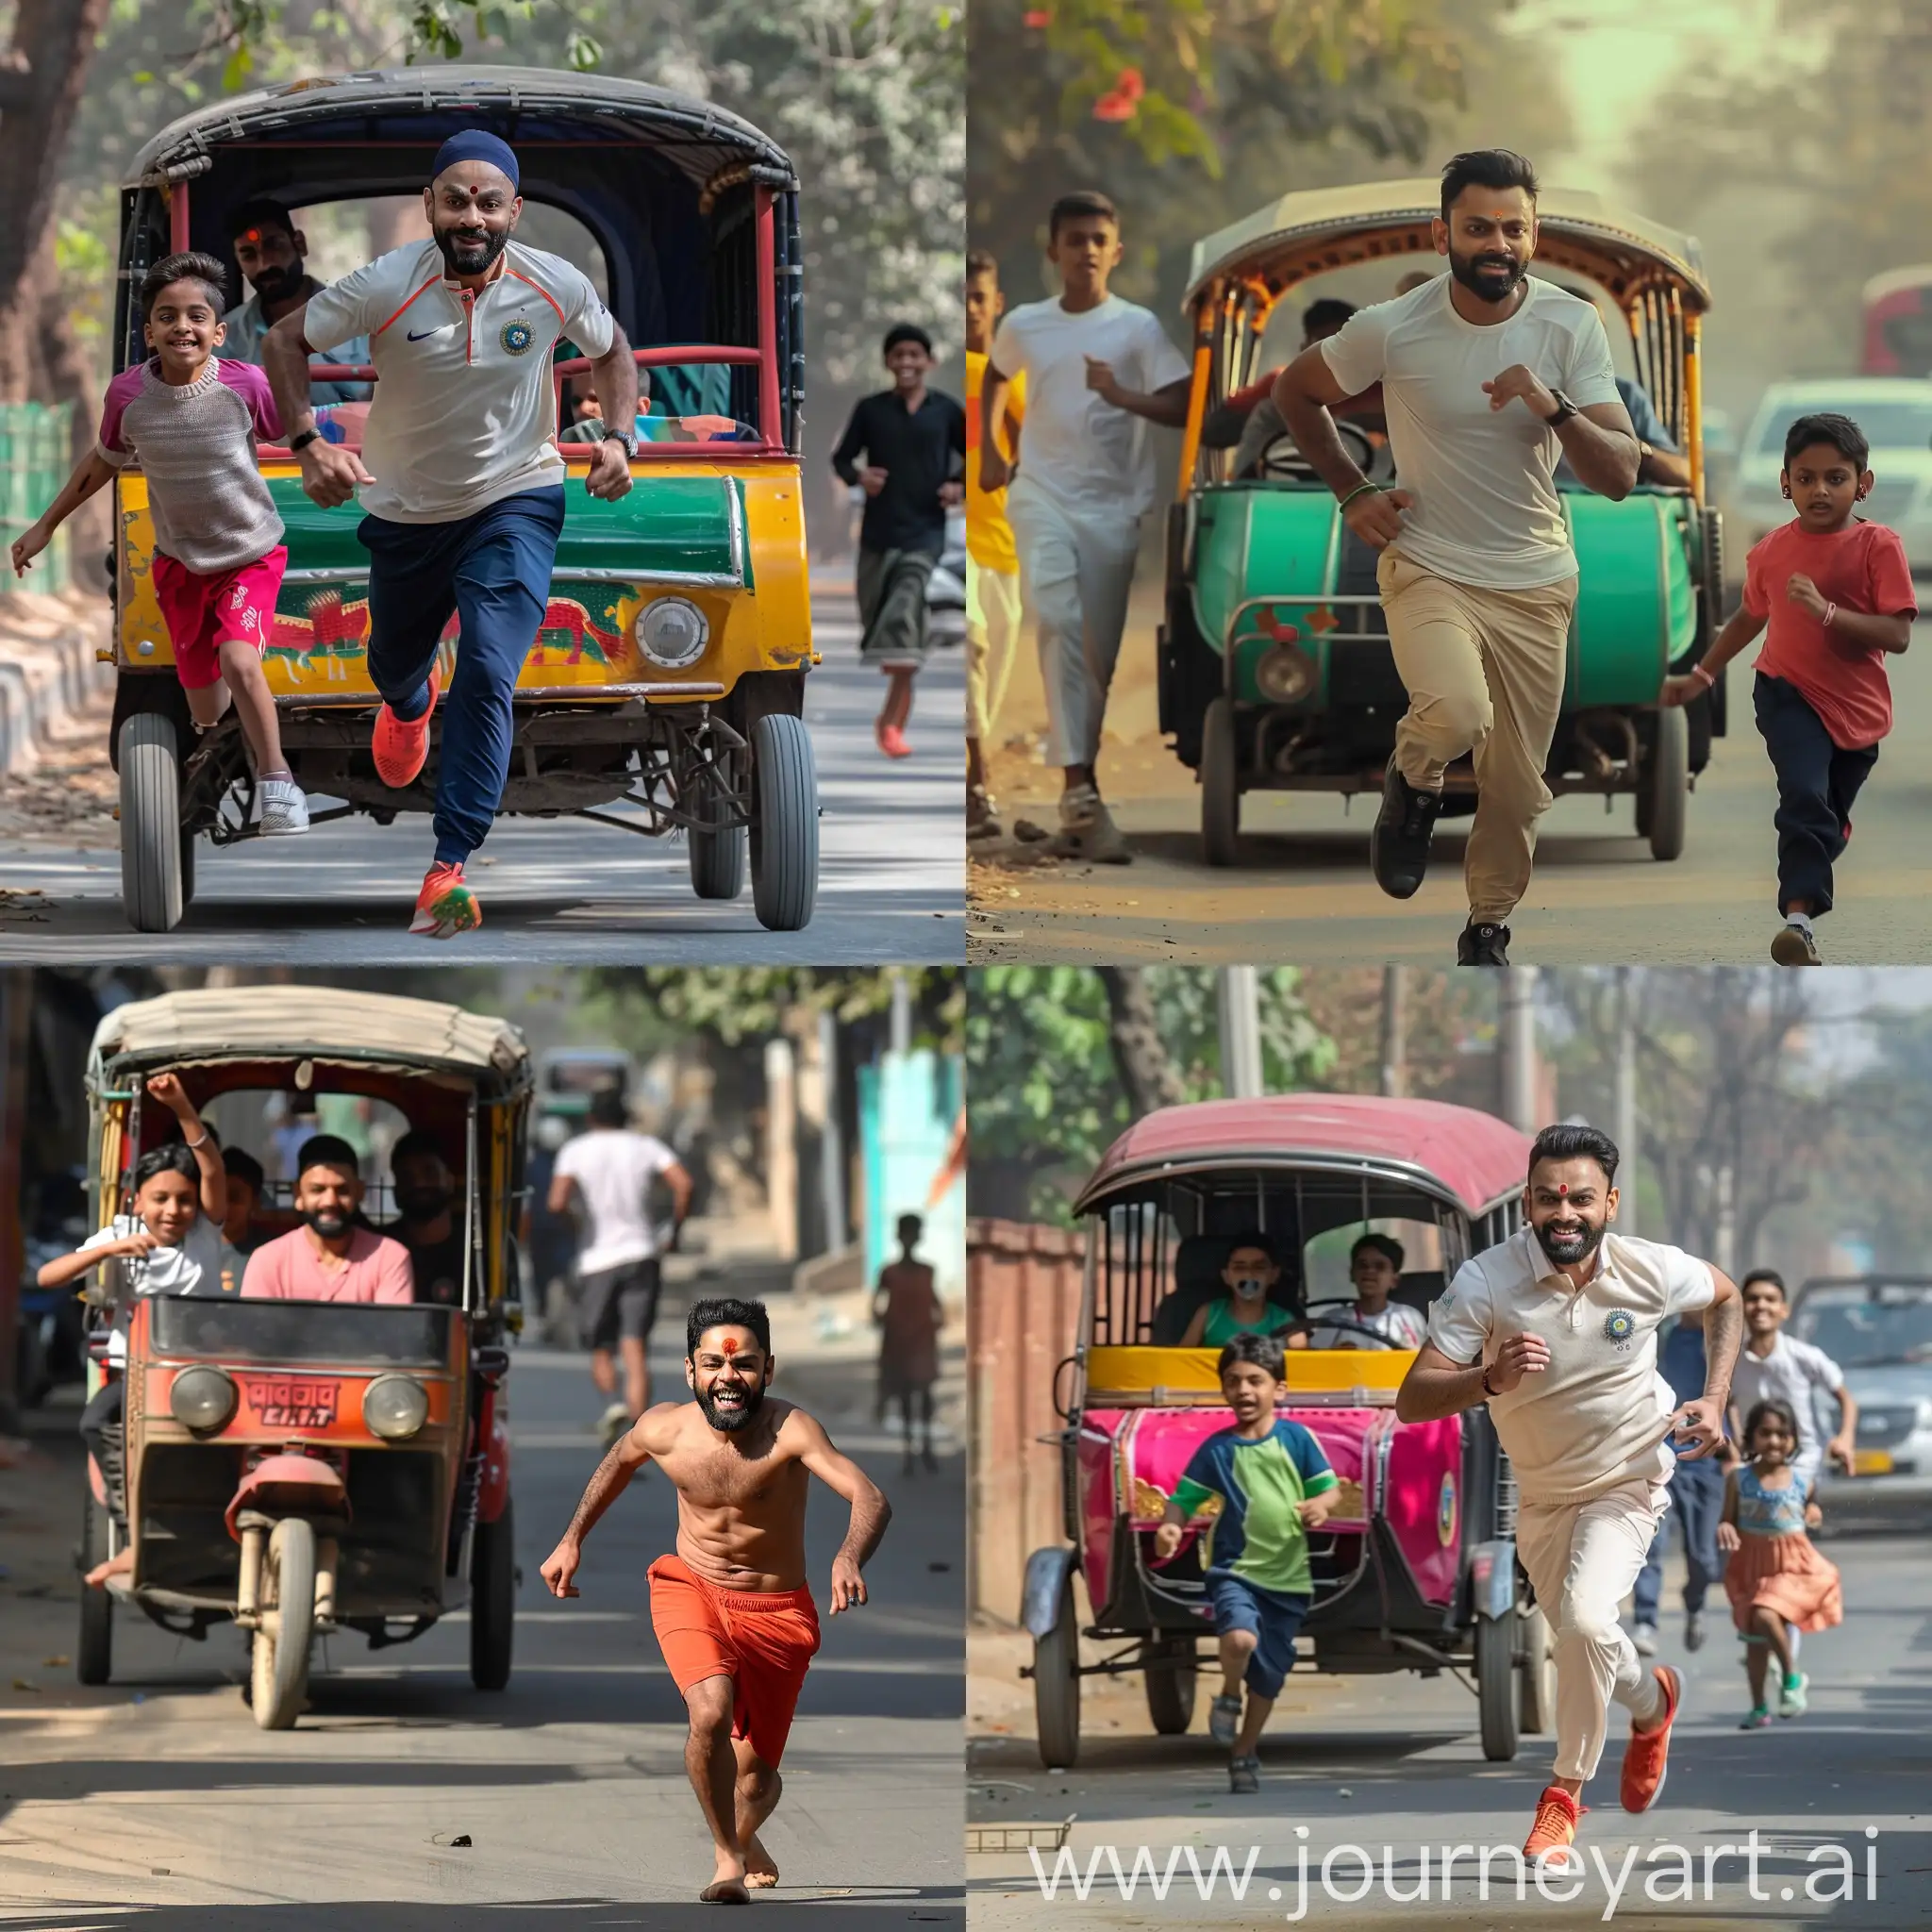 Virat-Kohli-Chasing-Indian-Auto-Rickshaw-with-Dancing-Kid